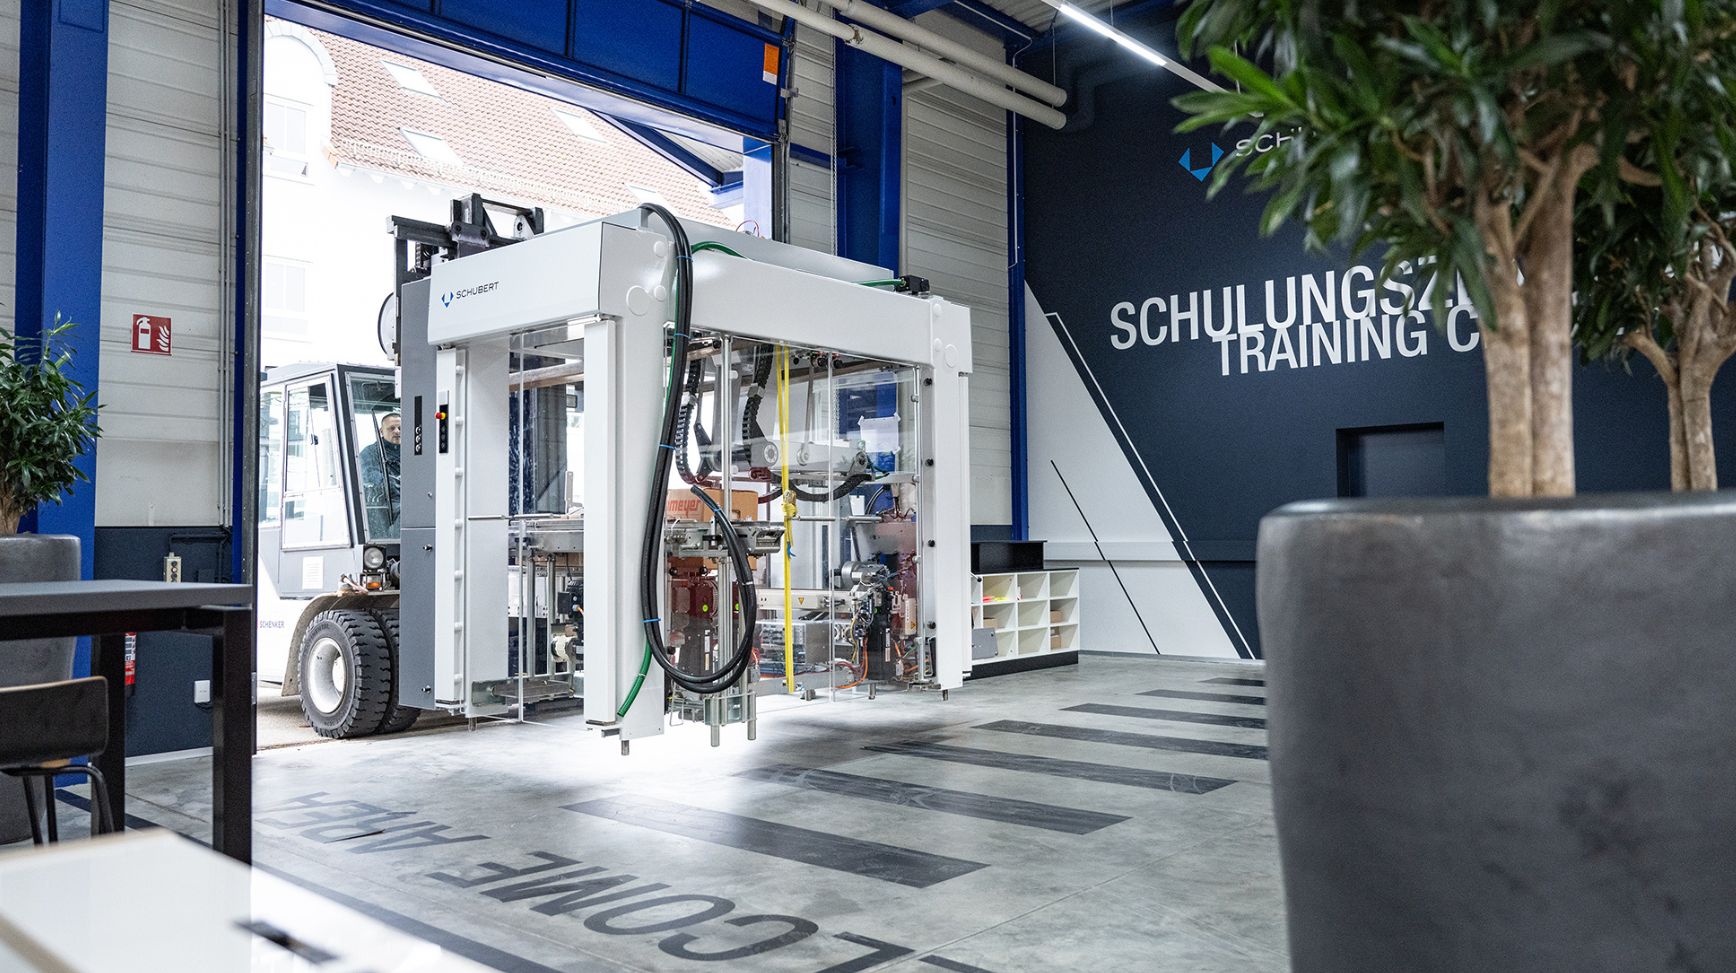 Schubert breidt uit met een nieuwe trainging verpakkingsmachine